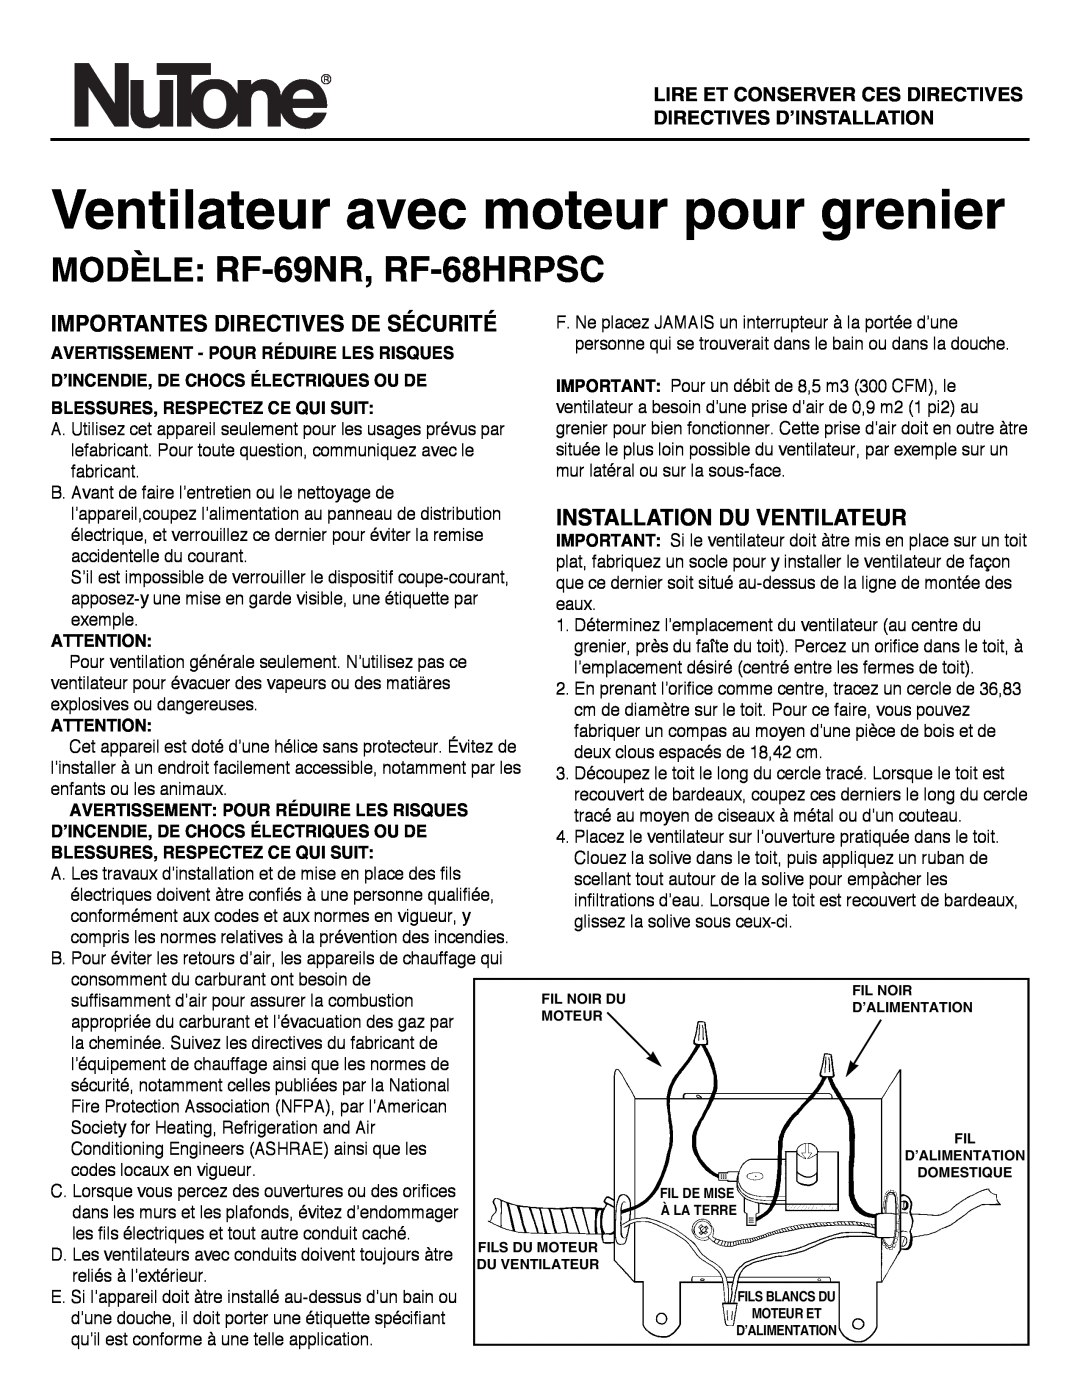 NuTone MODÈLE RF-69NR, RF-68HRPSC, Importantes Directives De Sécurité, Installation Du Ventilateur 